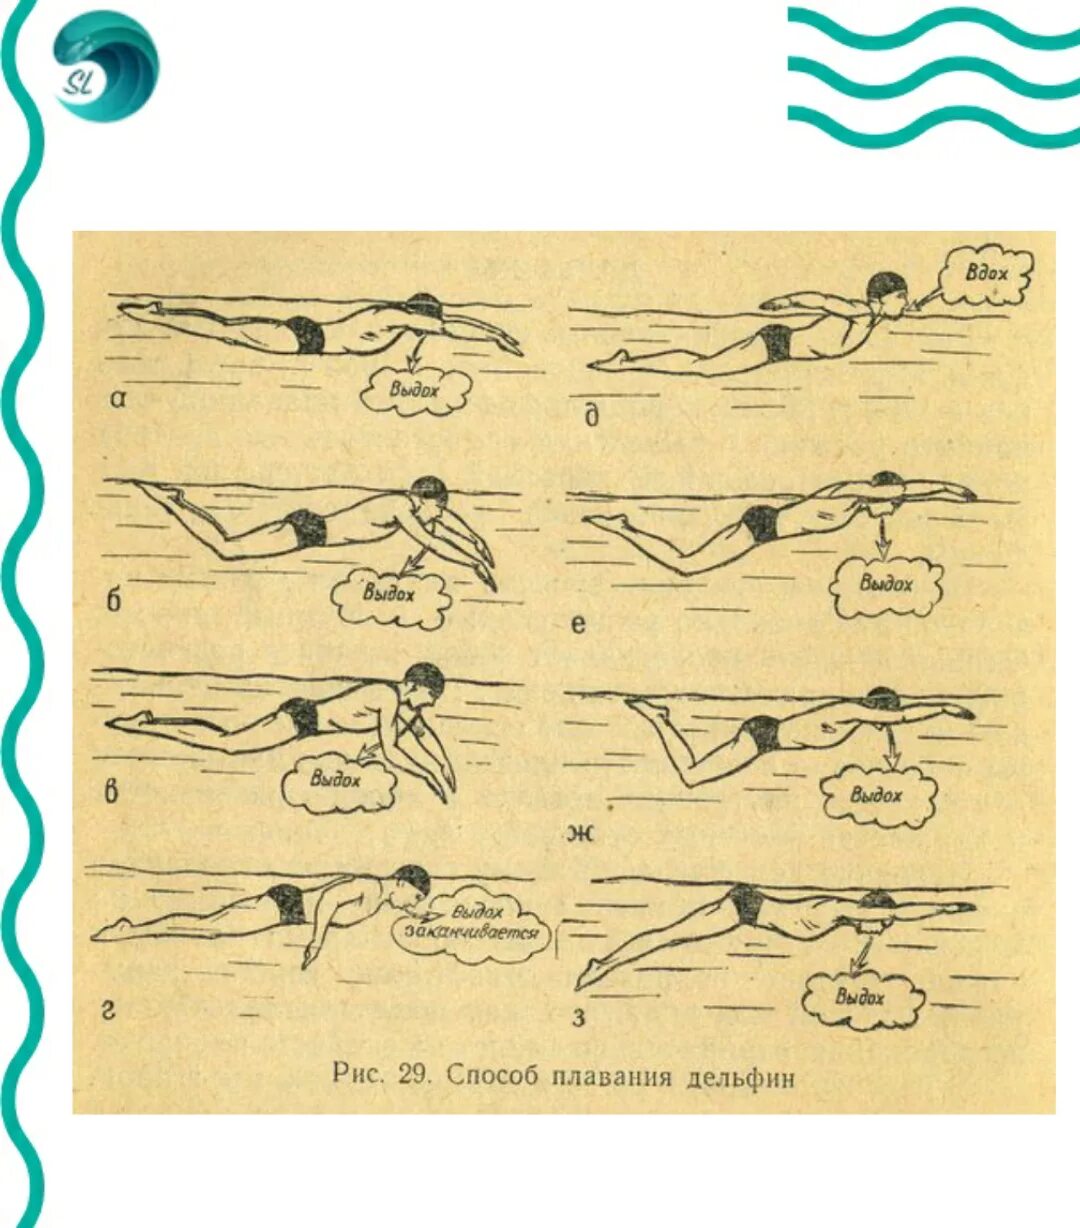 Как научиться плавать под. Техники плавания Баттерфляй. Стиль плавания Баттерфляй техника. Техника плавания: стиль Баттерфляй (Дельфин). Техники плавания брасс Кроль Баттерфляй.